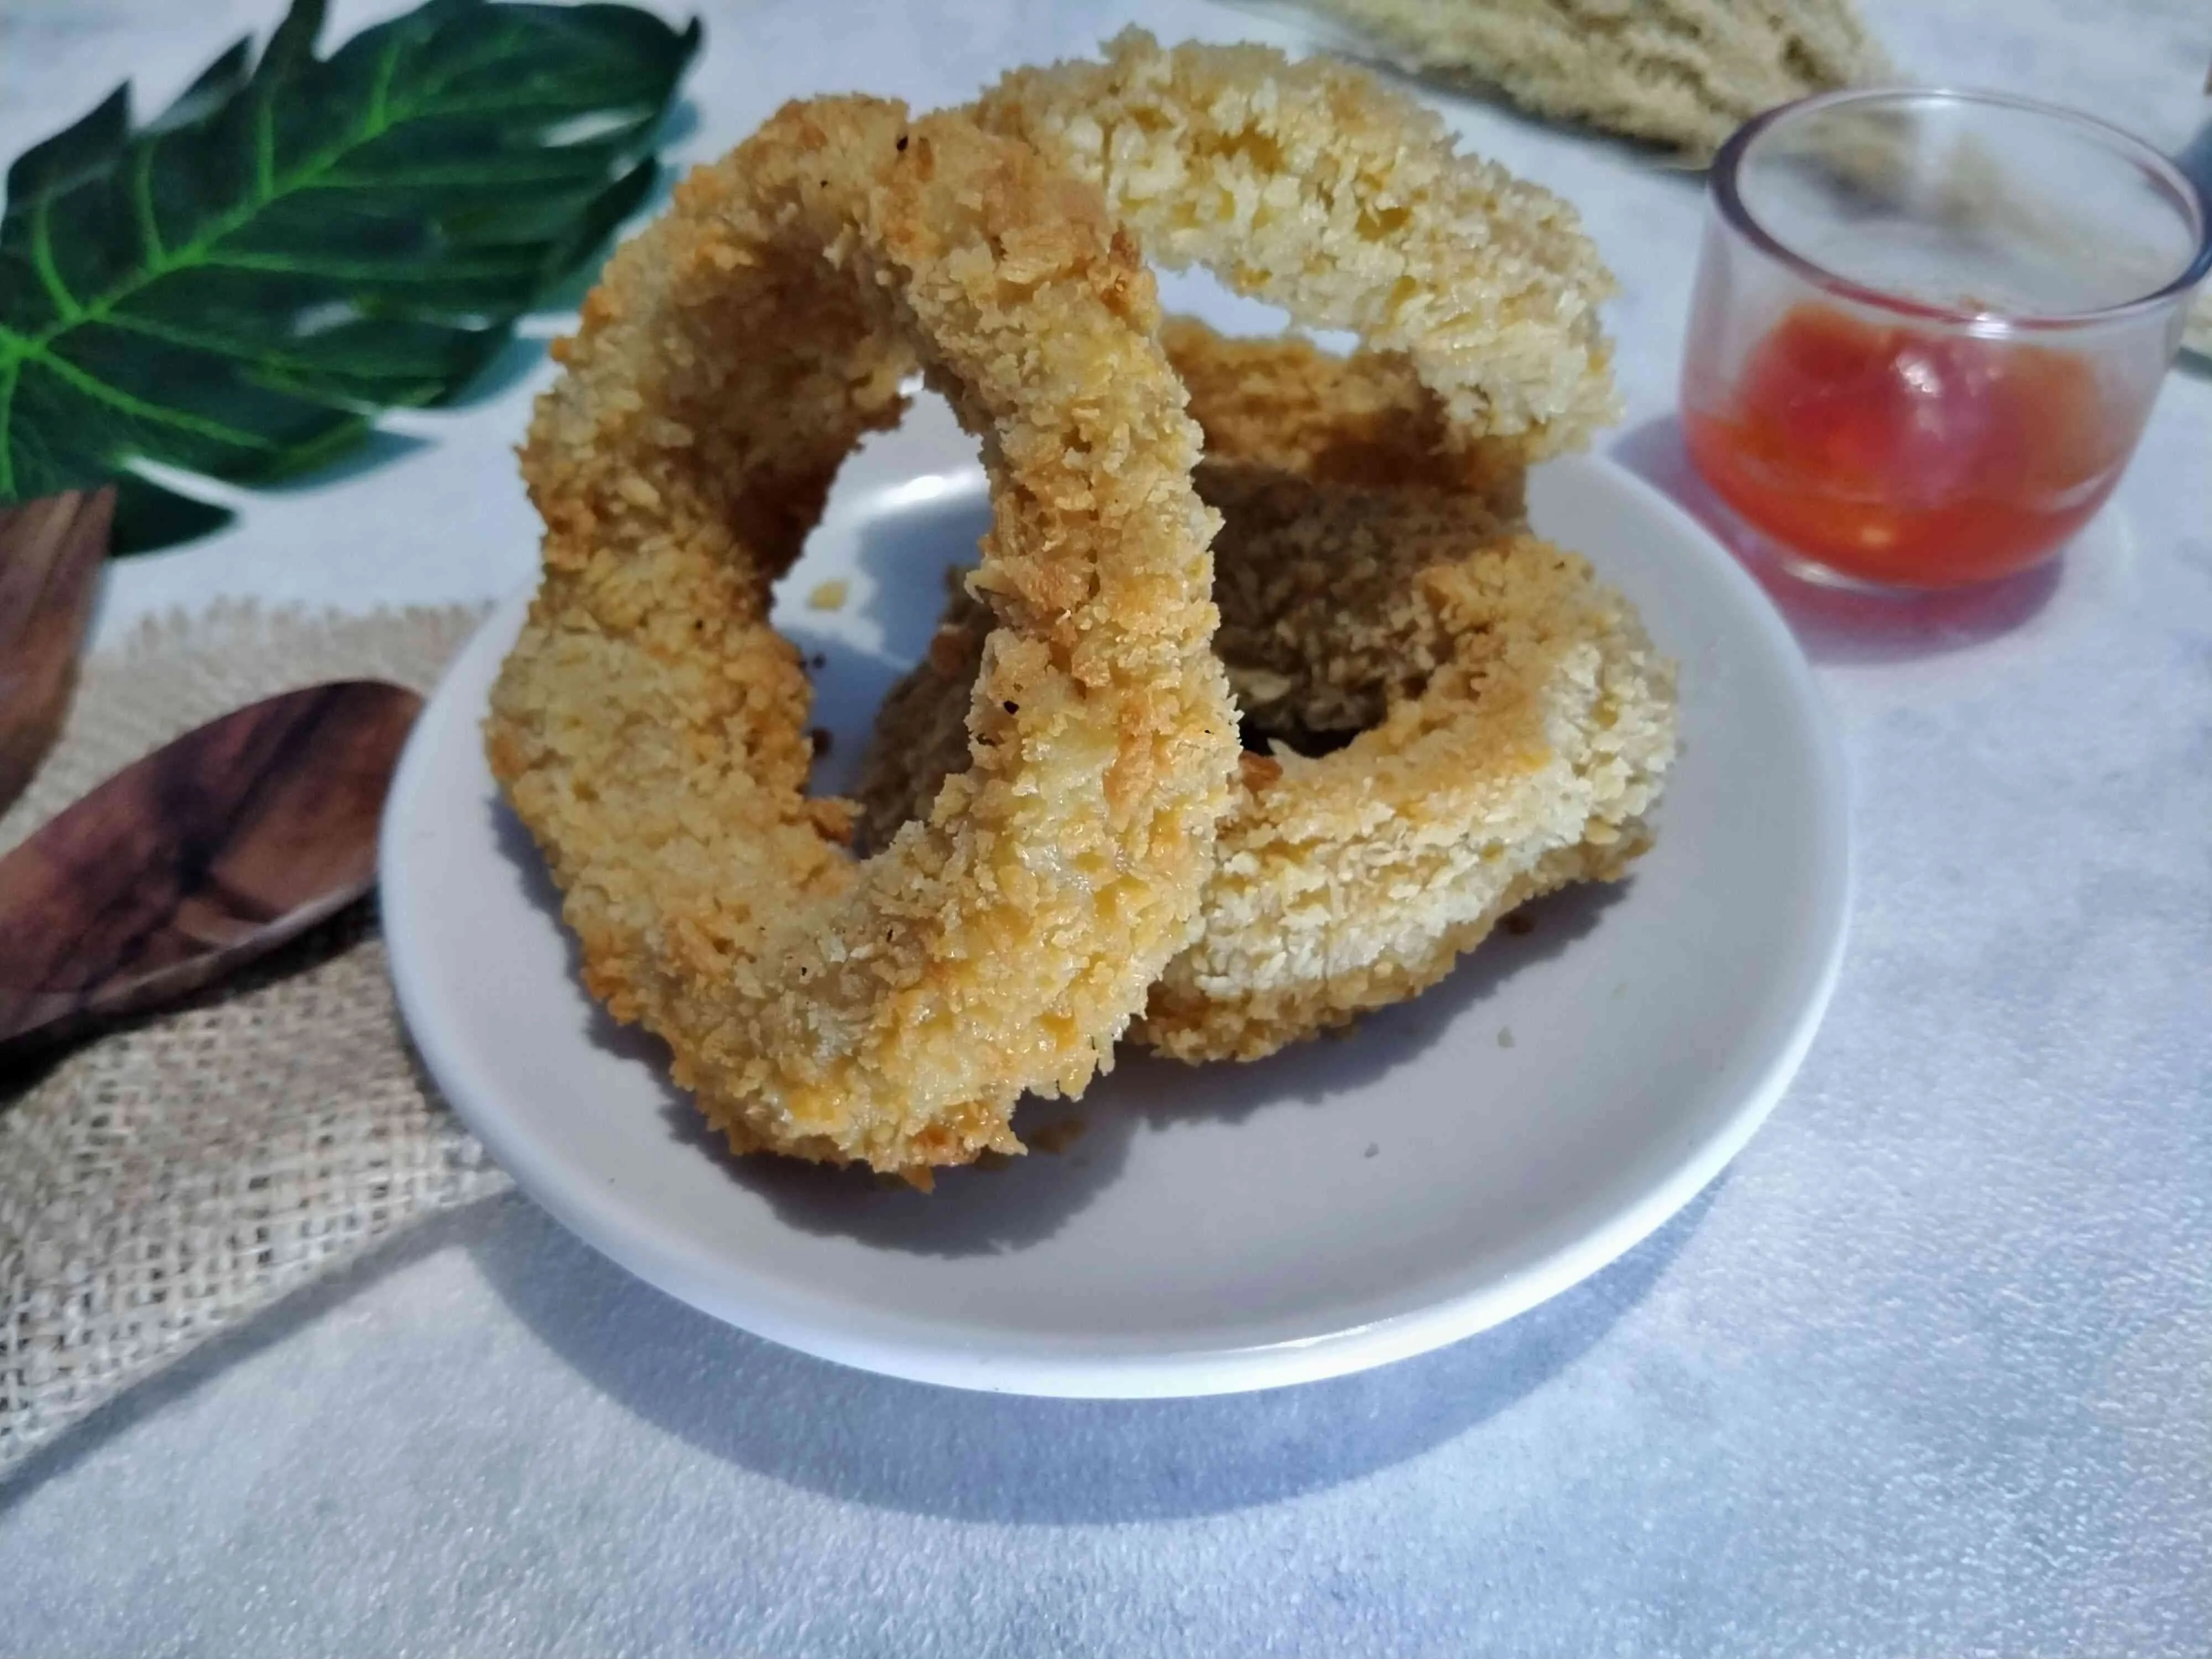 Onion Ring